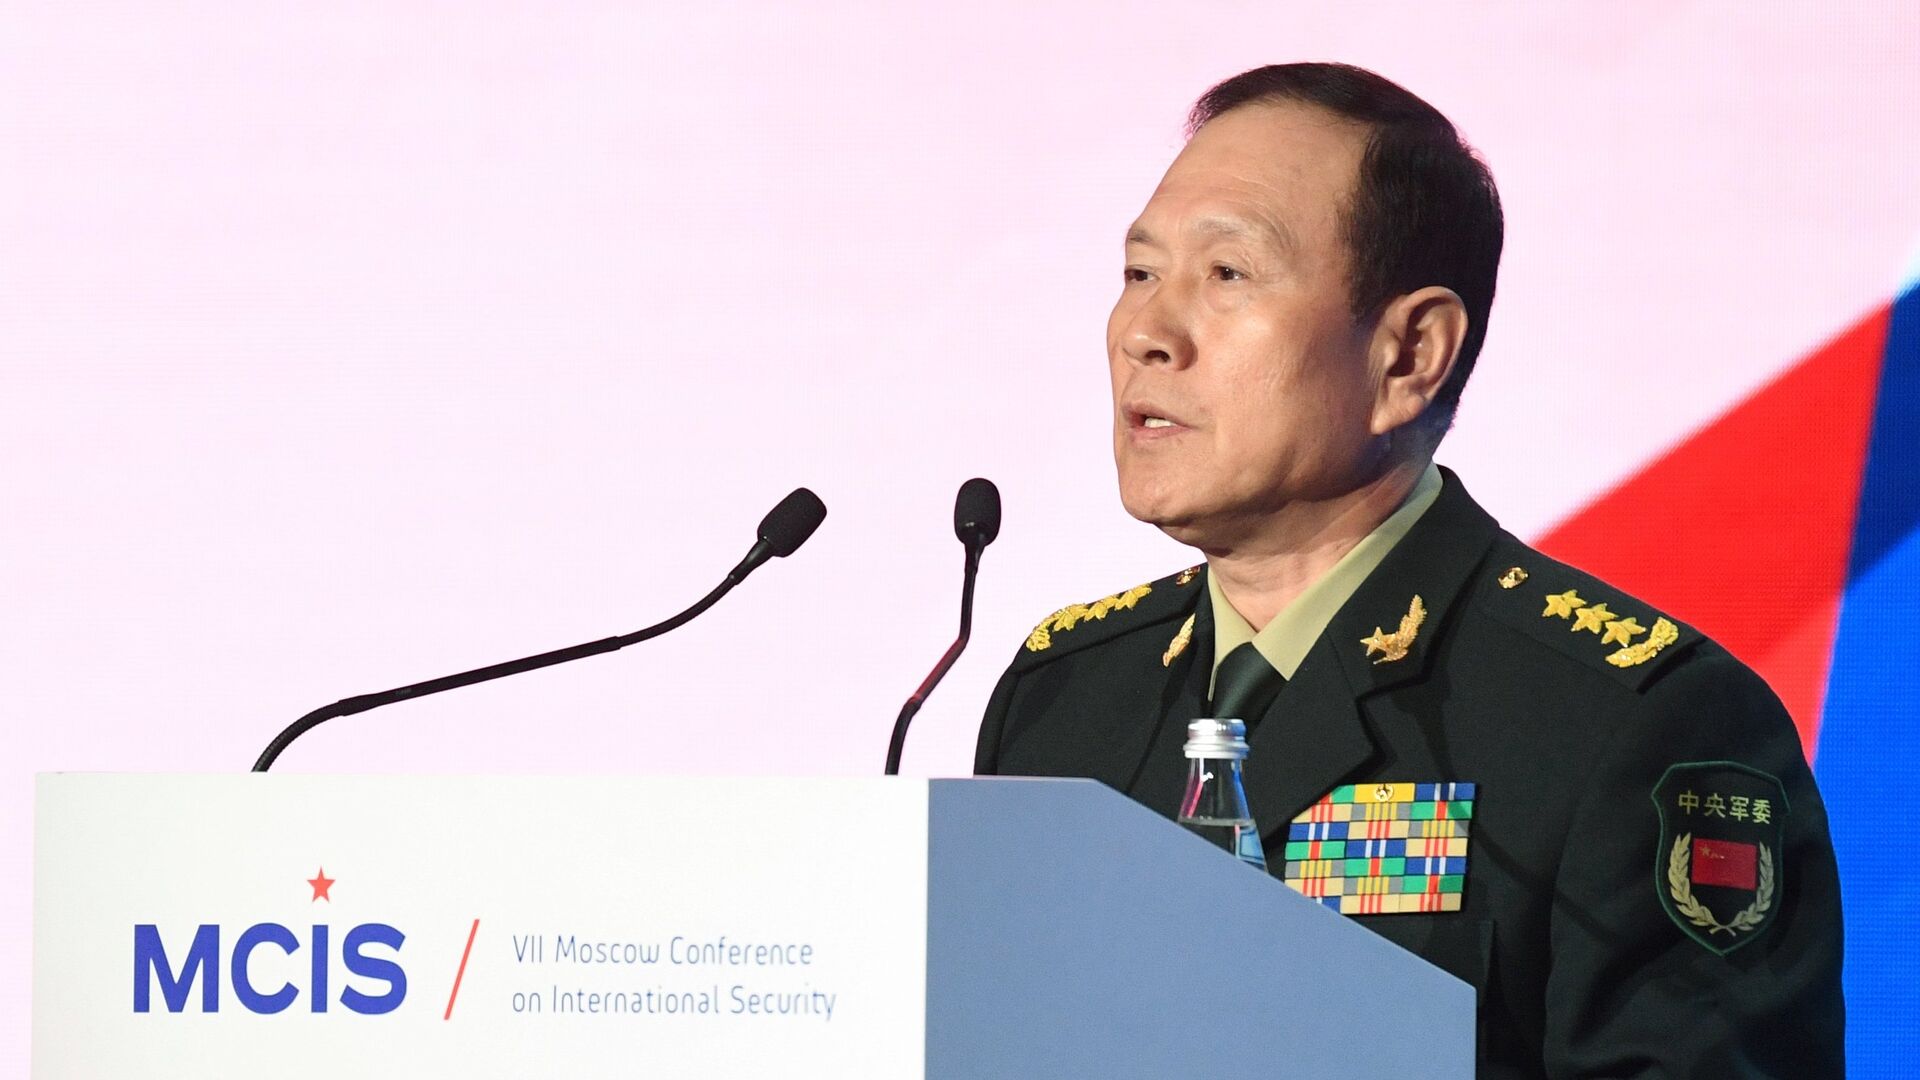 Министр обороны КНР, генерал-полковник Вэй Фэнхэ выступает на VII Московской конференции по международной безопасности. 4 апреля 2018 - РИА Новости, 1920, 23.11.2021